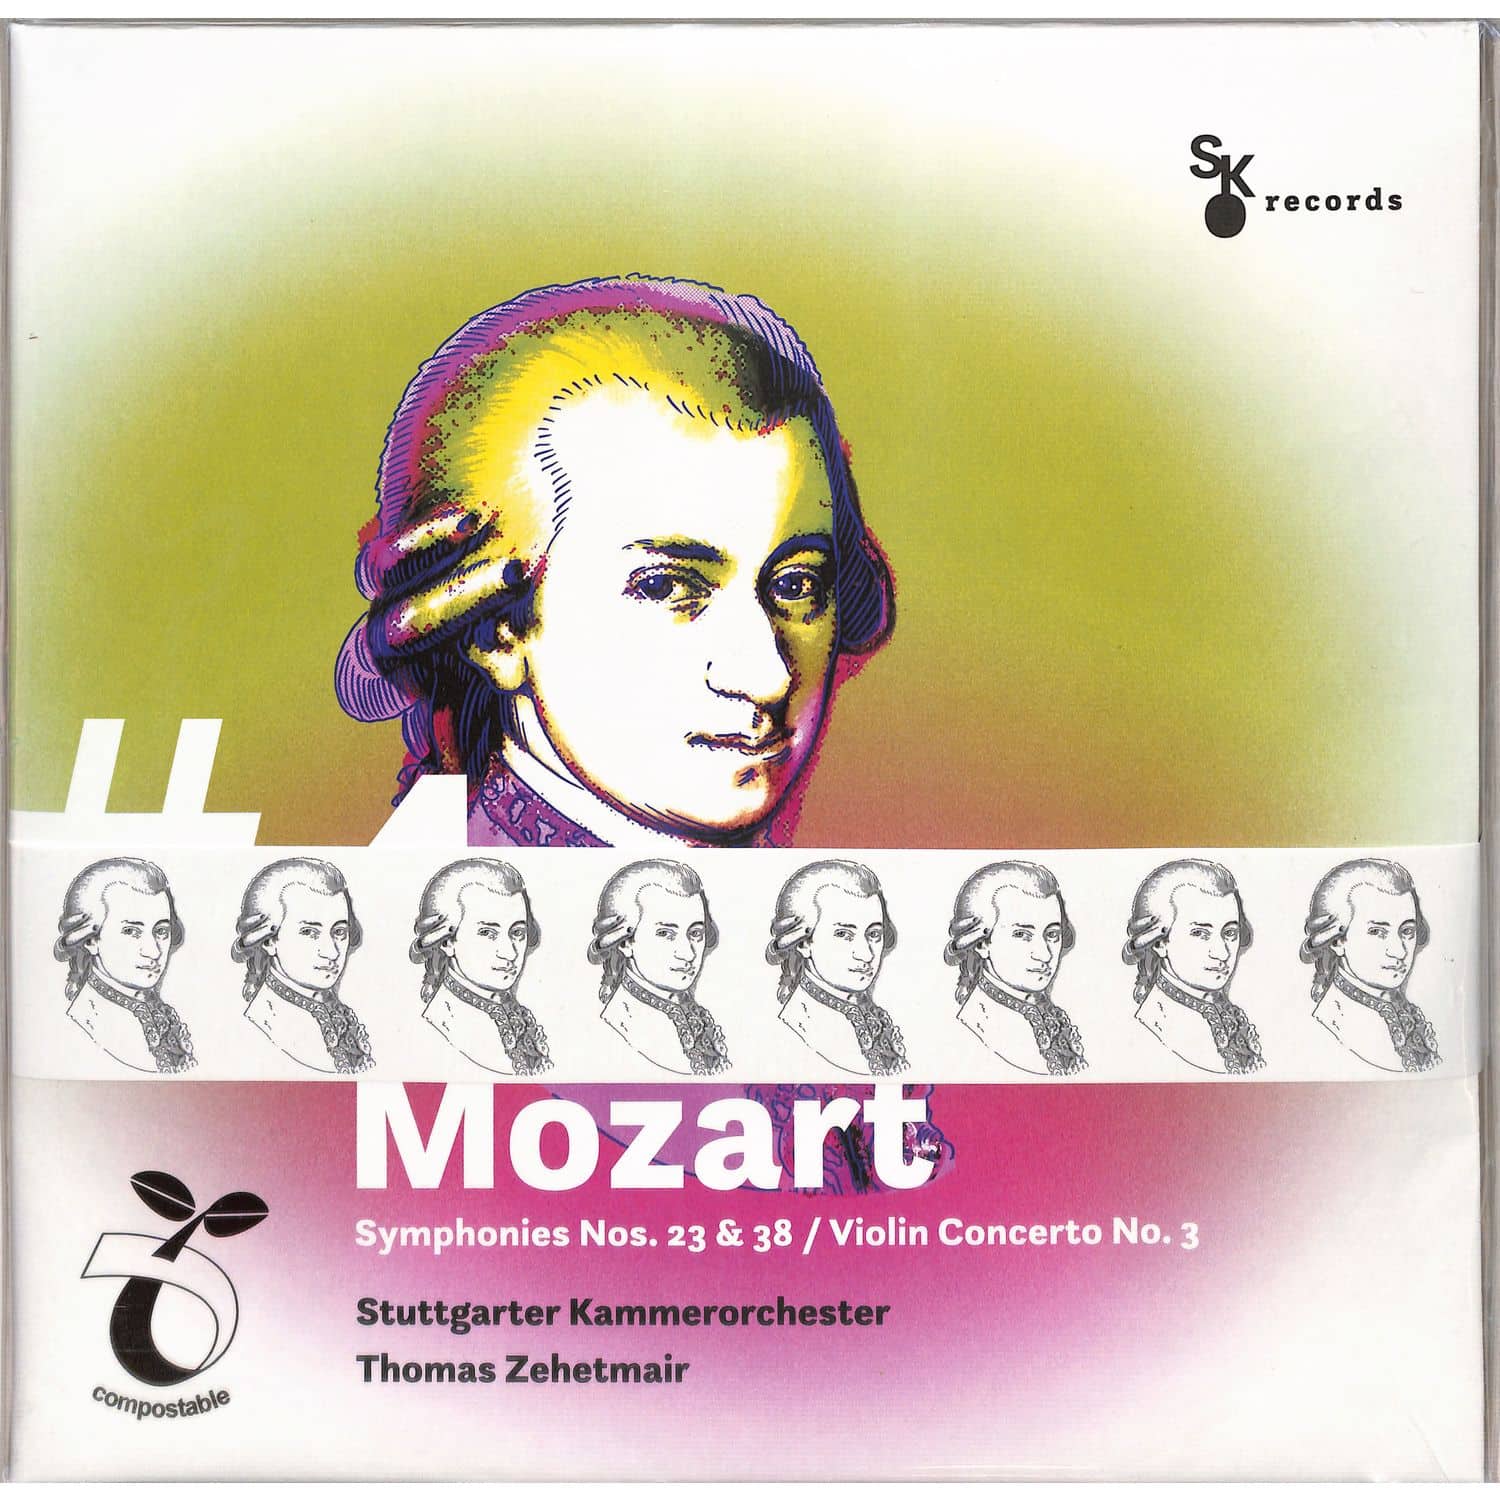 Stuttgarter Kammerorchester - MOZART:#4SYMPHONIES NOS. 23 & 38 PRAGUE 